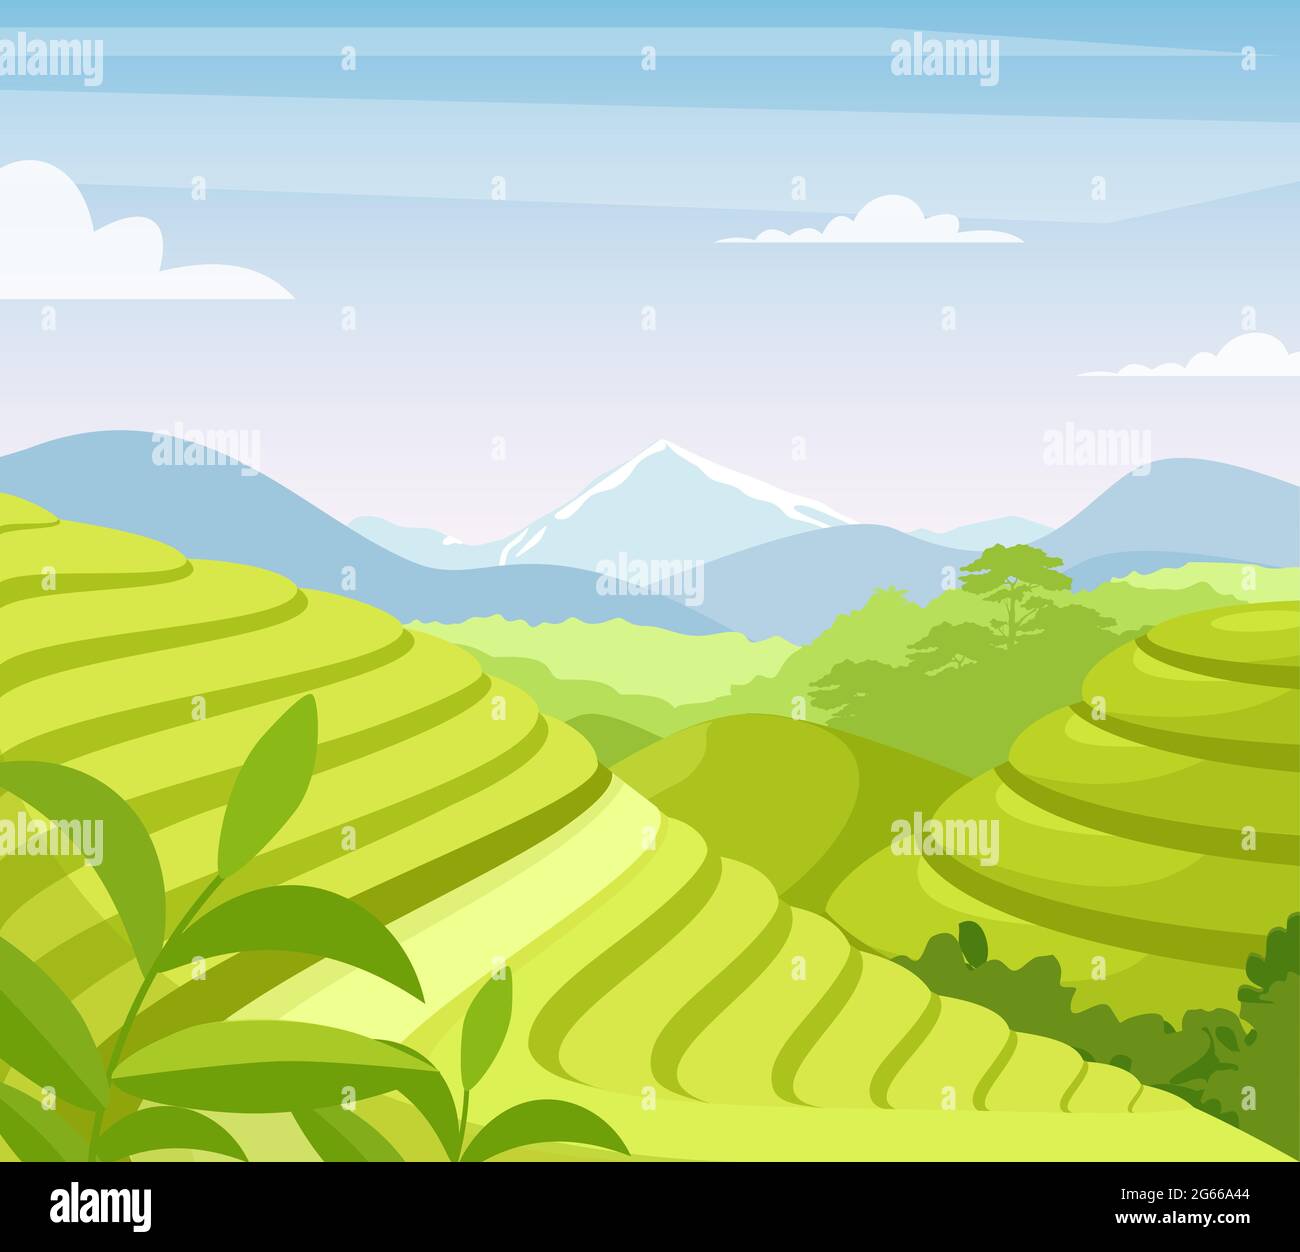 Flache Vektorgrafik für Teeplantagen. Asien Land Ackerland Felder. Asiatische ländliche Wiese und Hügel Cartoon-Landschaft. Teeblätter wachsen im Boden Stock Vektor